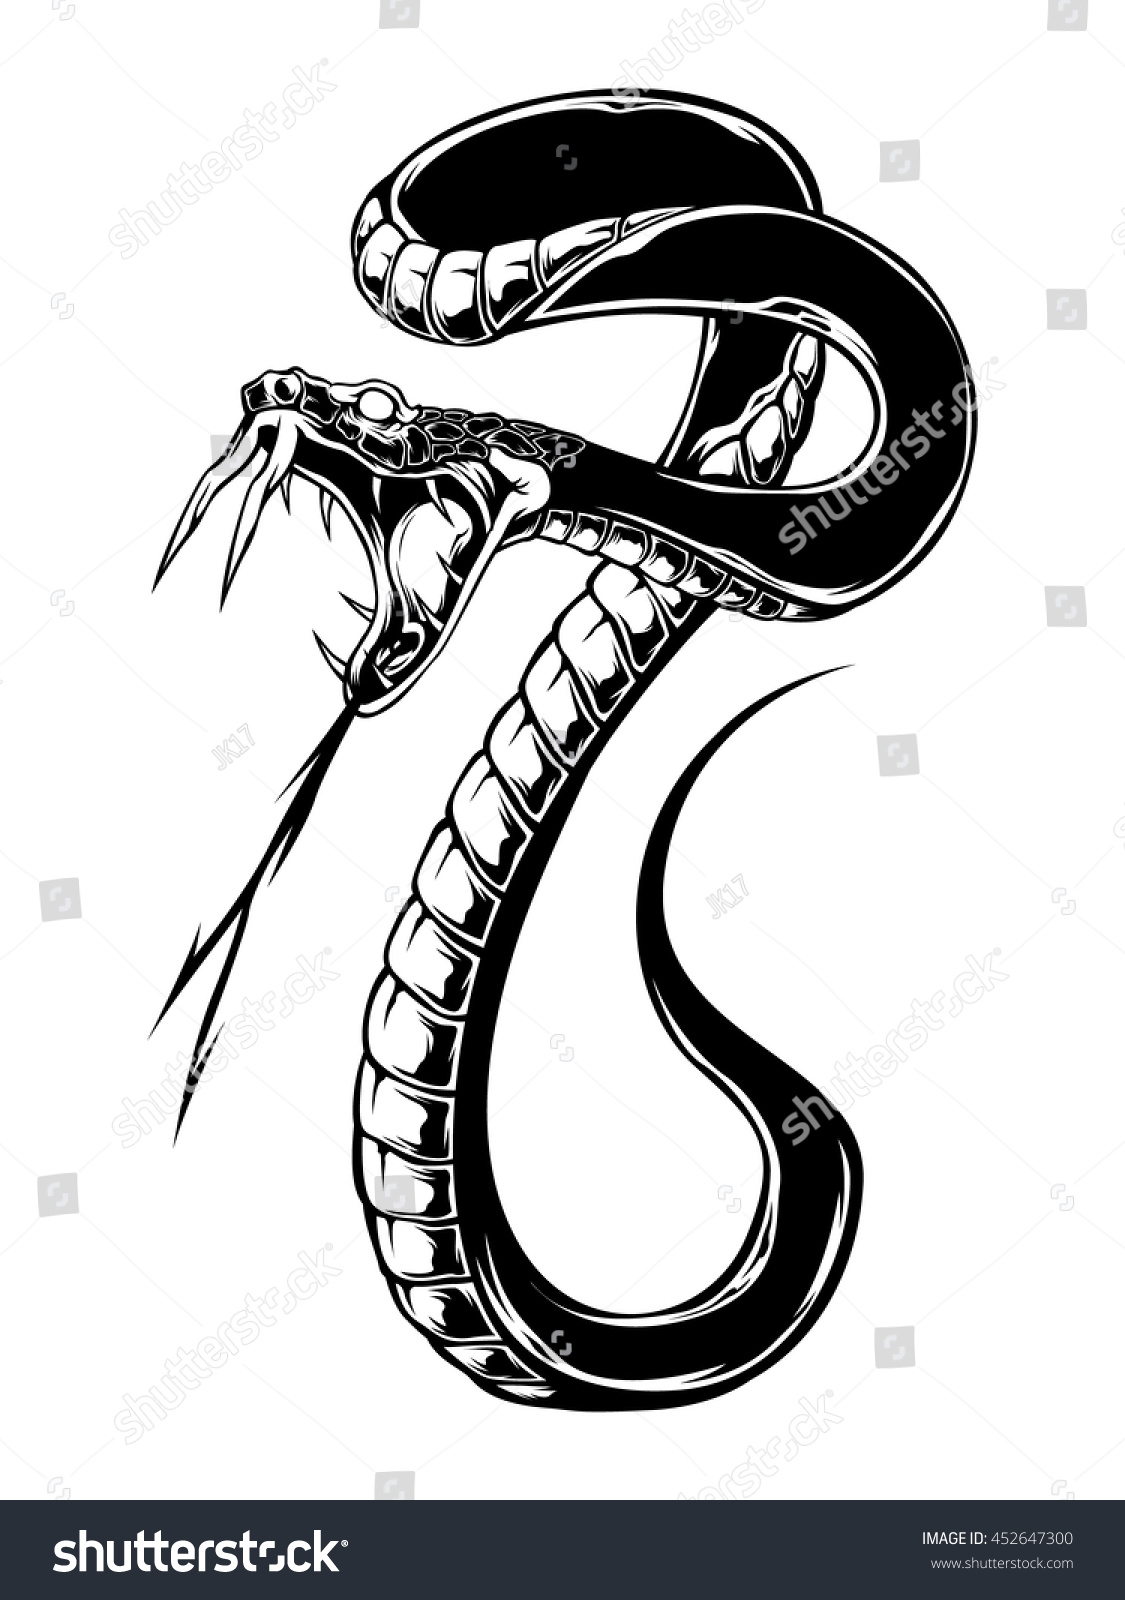 Змея с открытой пастью тату